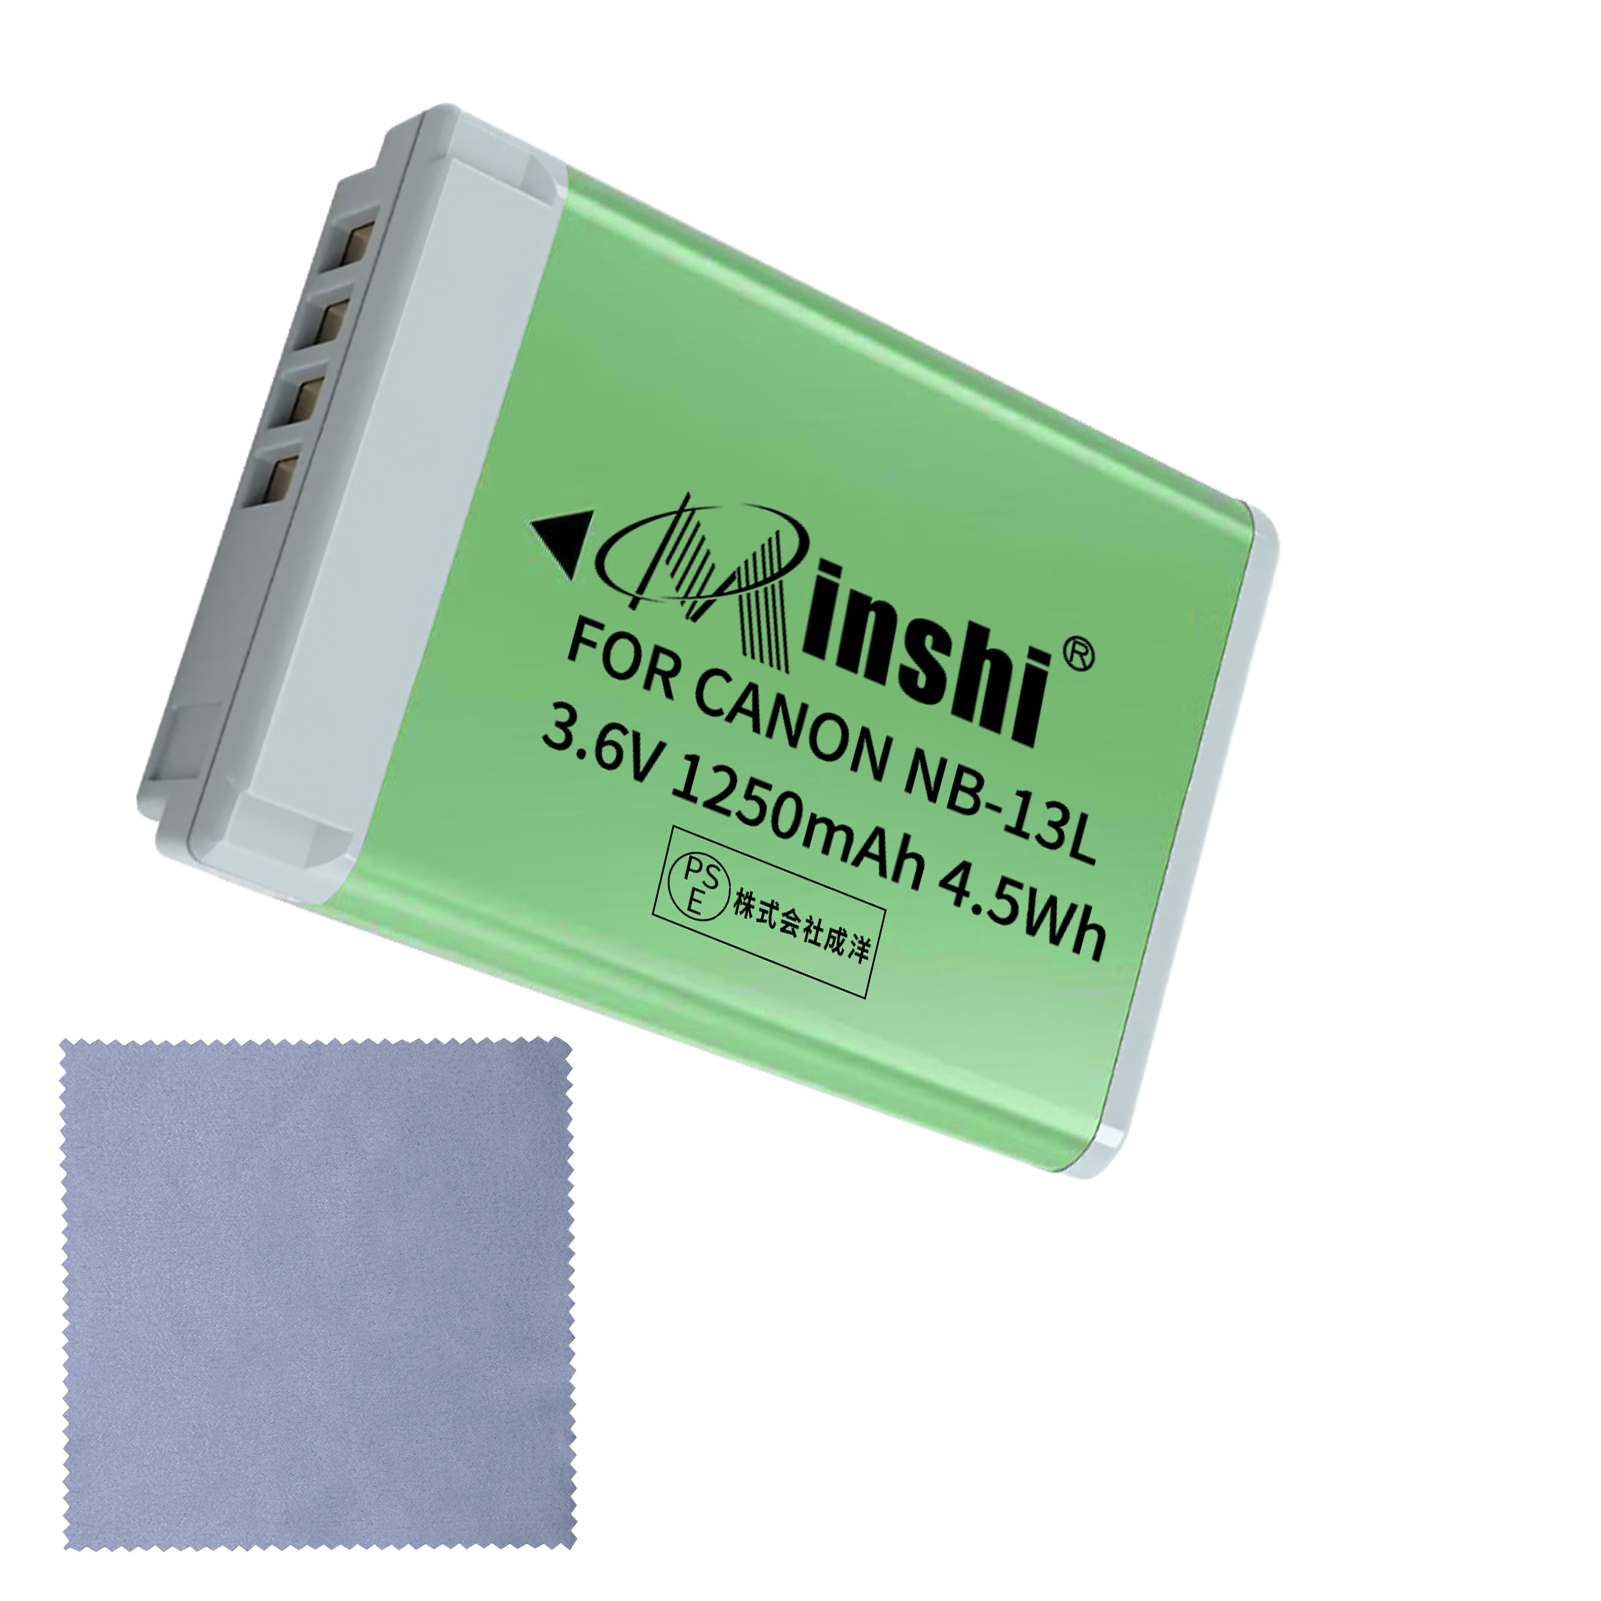 【クロス付き】 minshi CANONキヤノン NB-13L G7 X (G7X) NB-13L 対応 互換バッテリー G9X G7X G5X PowerShot 1250mAh 高品質交換用バッテリー